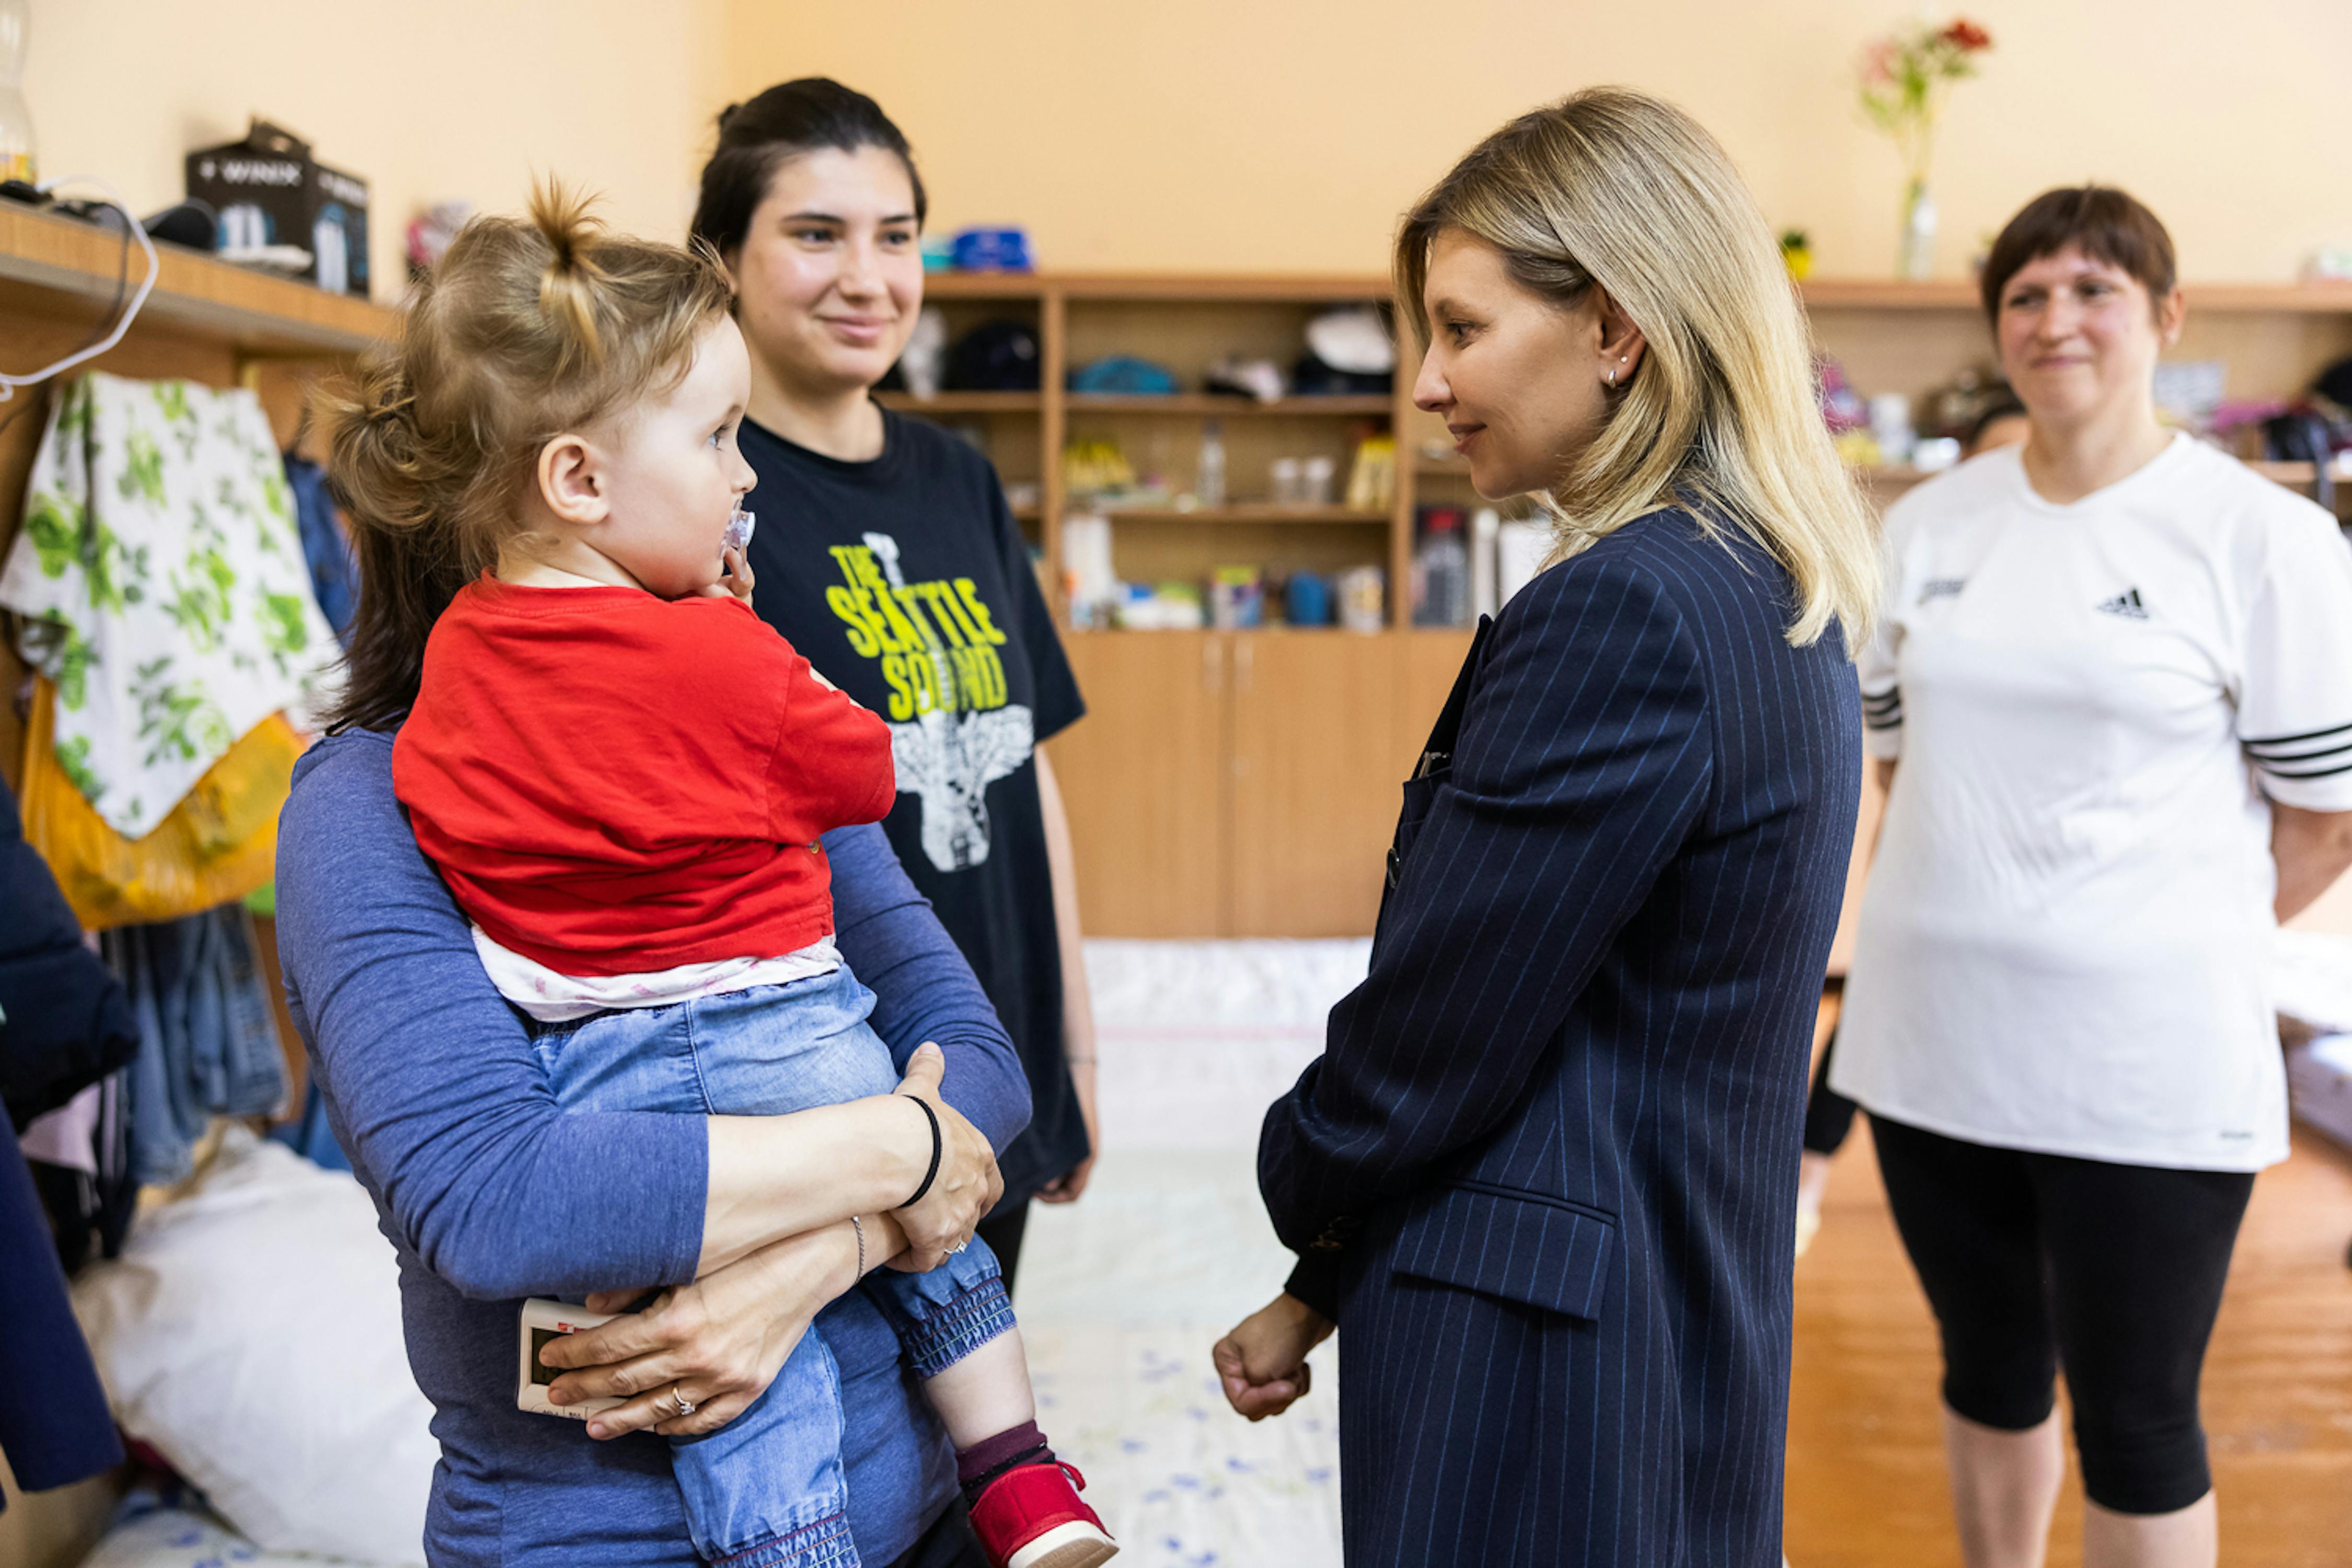 La First Lady Ucraina Olena Zelenska in visita alla città di Uzhhorod, dove si trovano circa 60 mila rifugiati. Nella foto sta parlando con una mamma che tiene la sua bambina in braccio